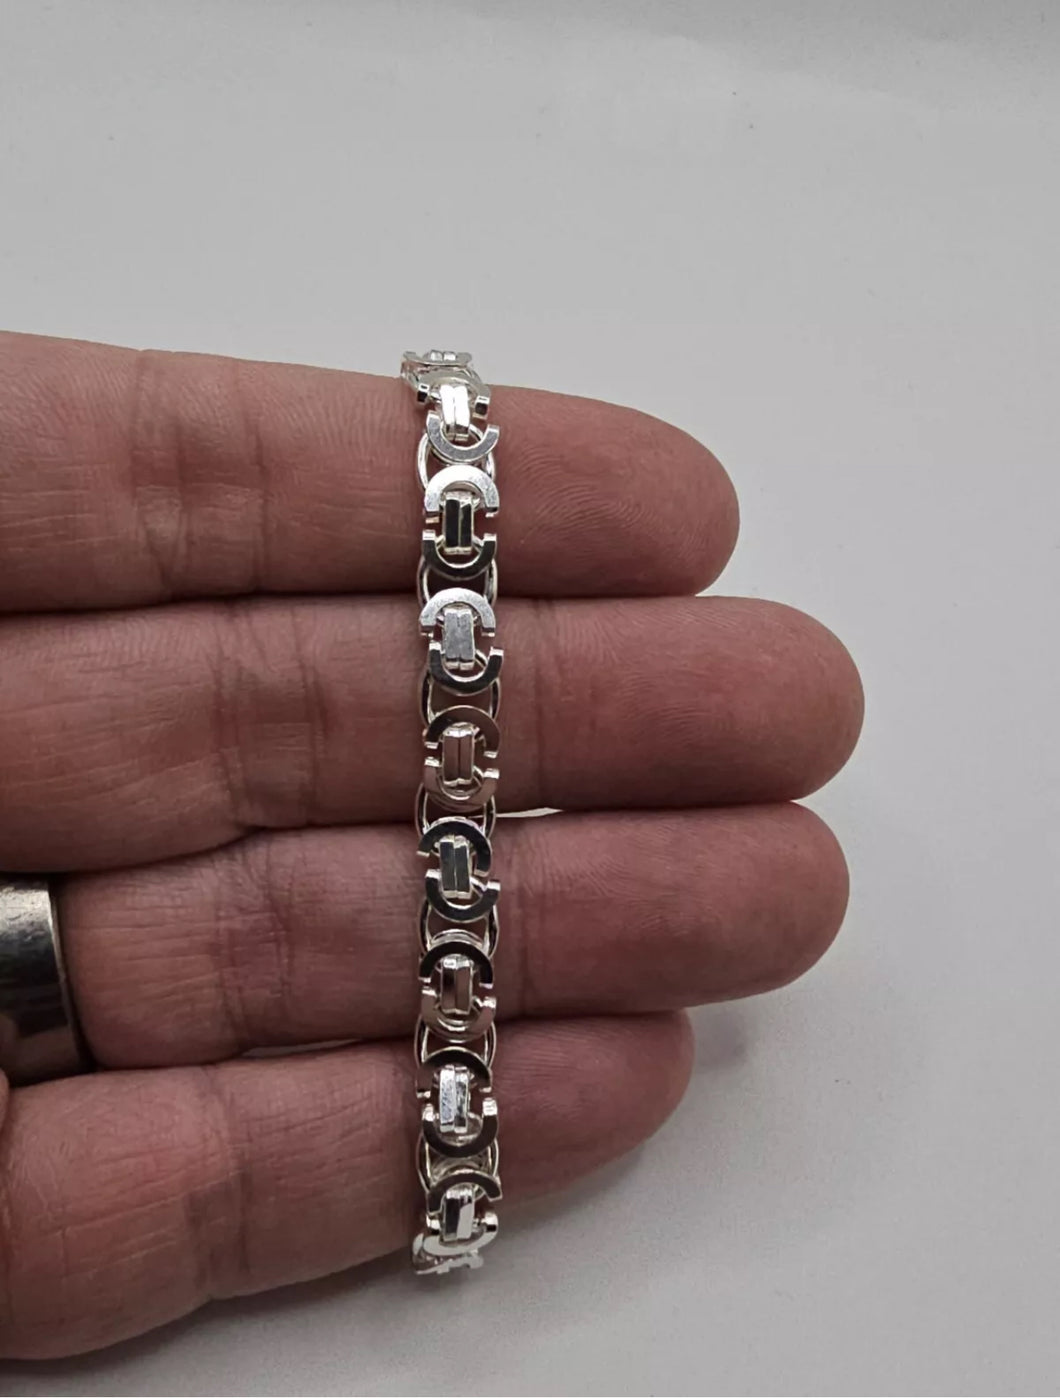 Solid silver Byzantine bracelet